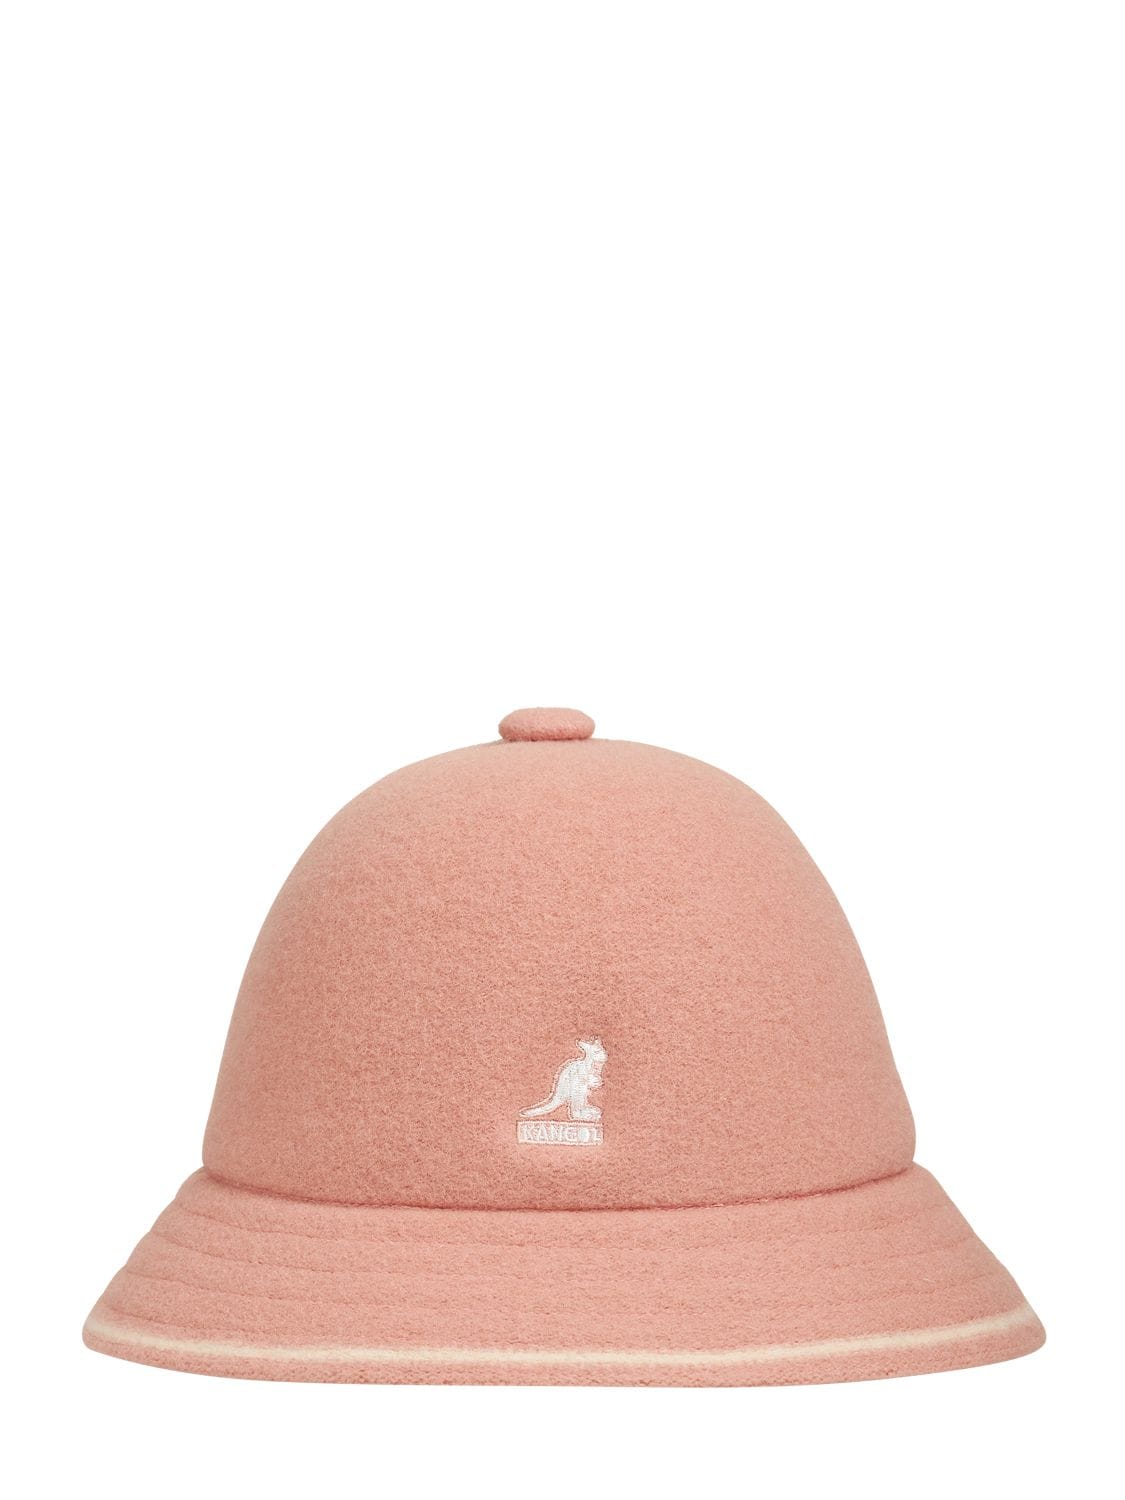 Kangol Wool Blend Bucket Hat In Pink